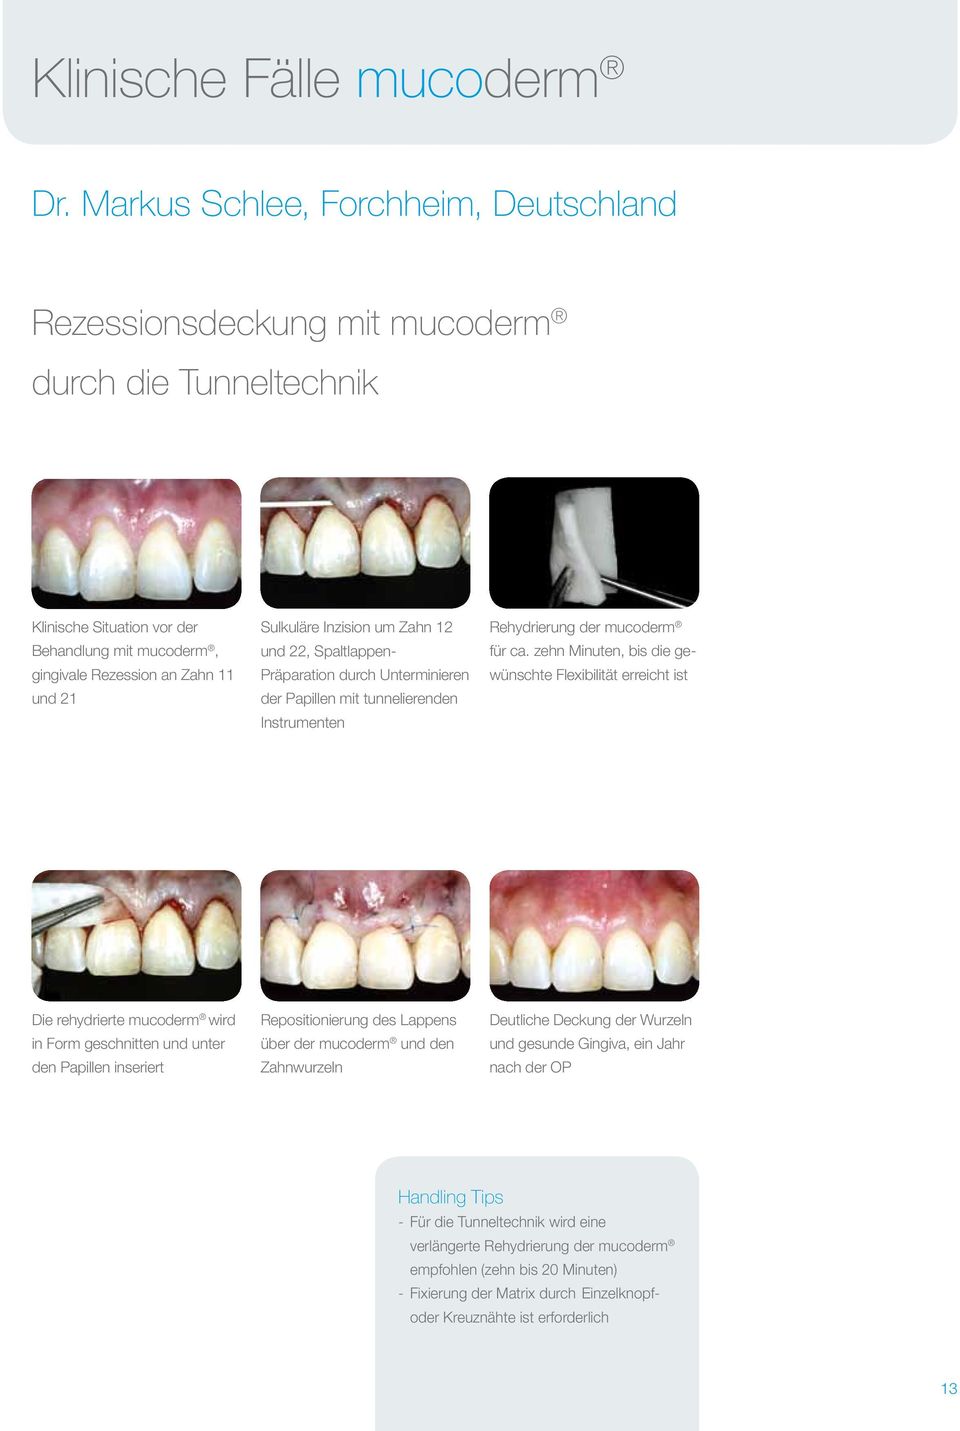 Inzision um Zahn 12 und 22, Spaltlappen- Präparation durch Unterminieren der Papillen mit tunnelierenden Instrumenten Rehydrierung der mucoderm für ca.